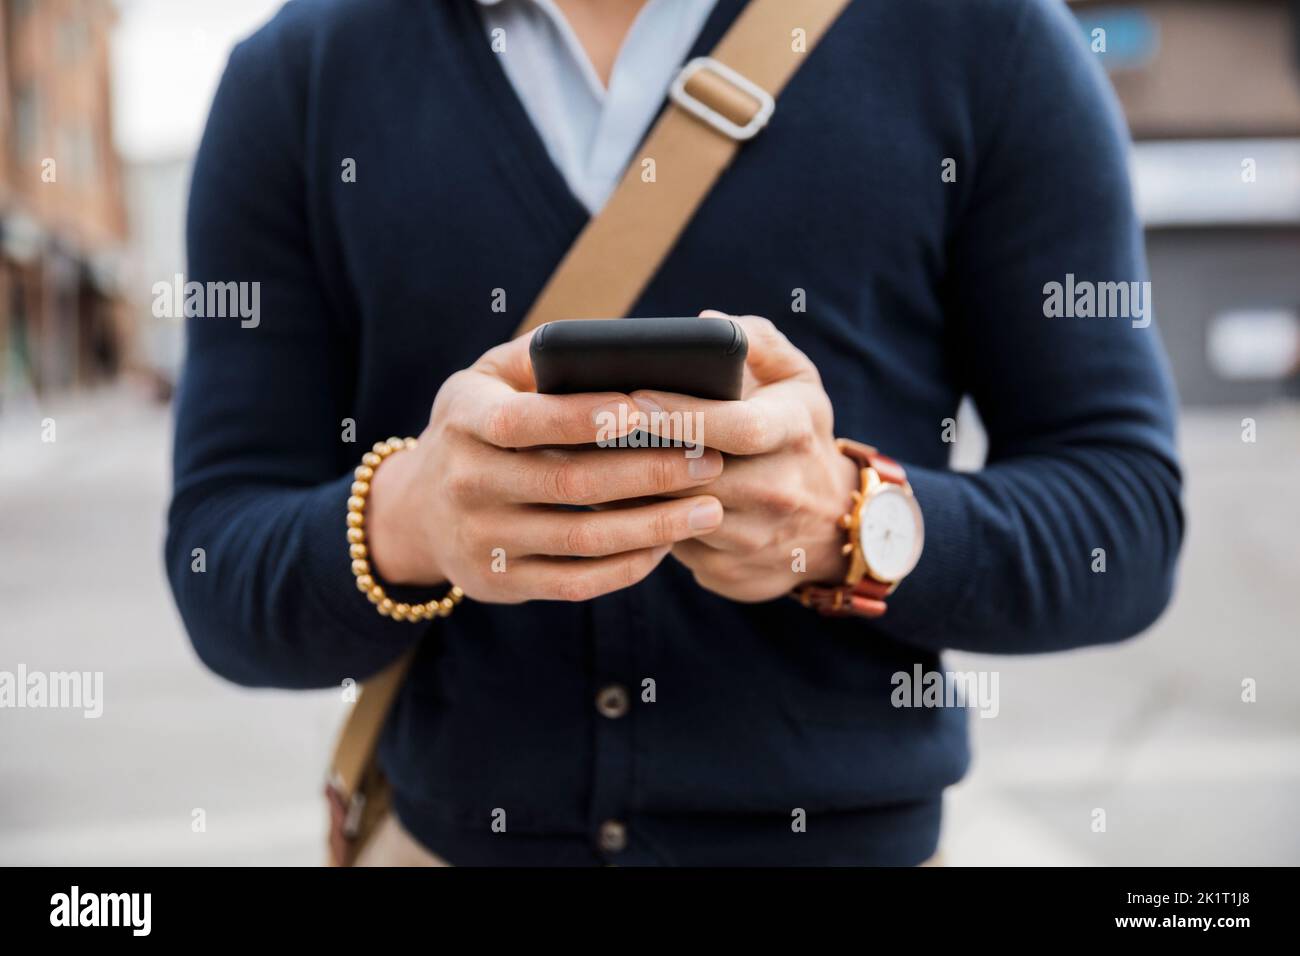 Close up portrait smart phone Banque D'Images